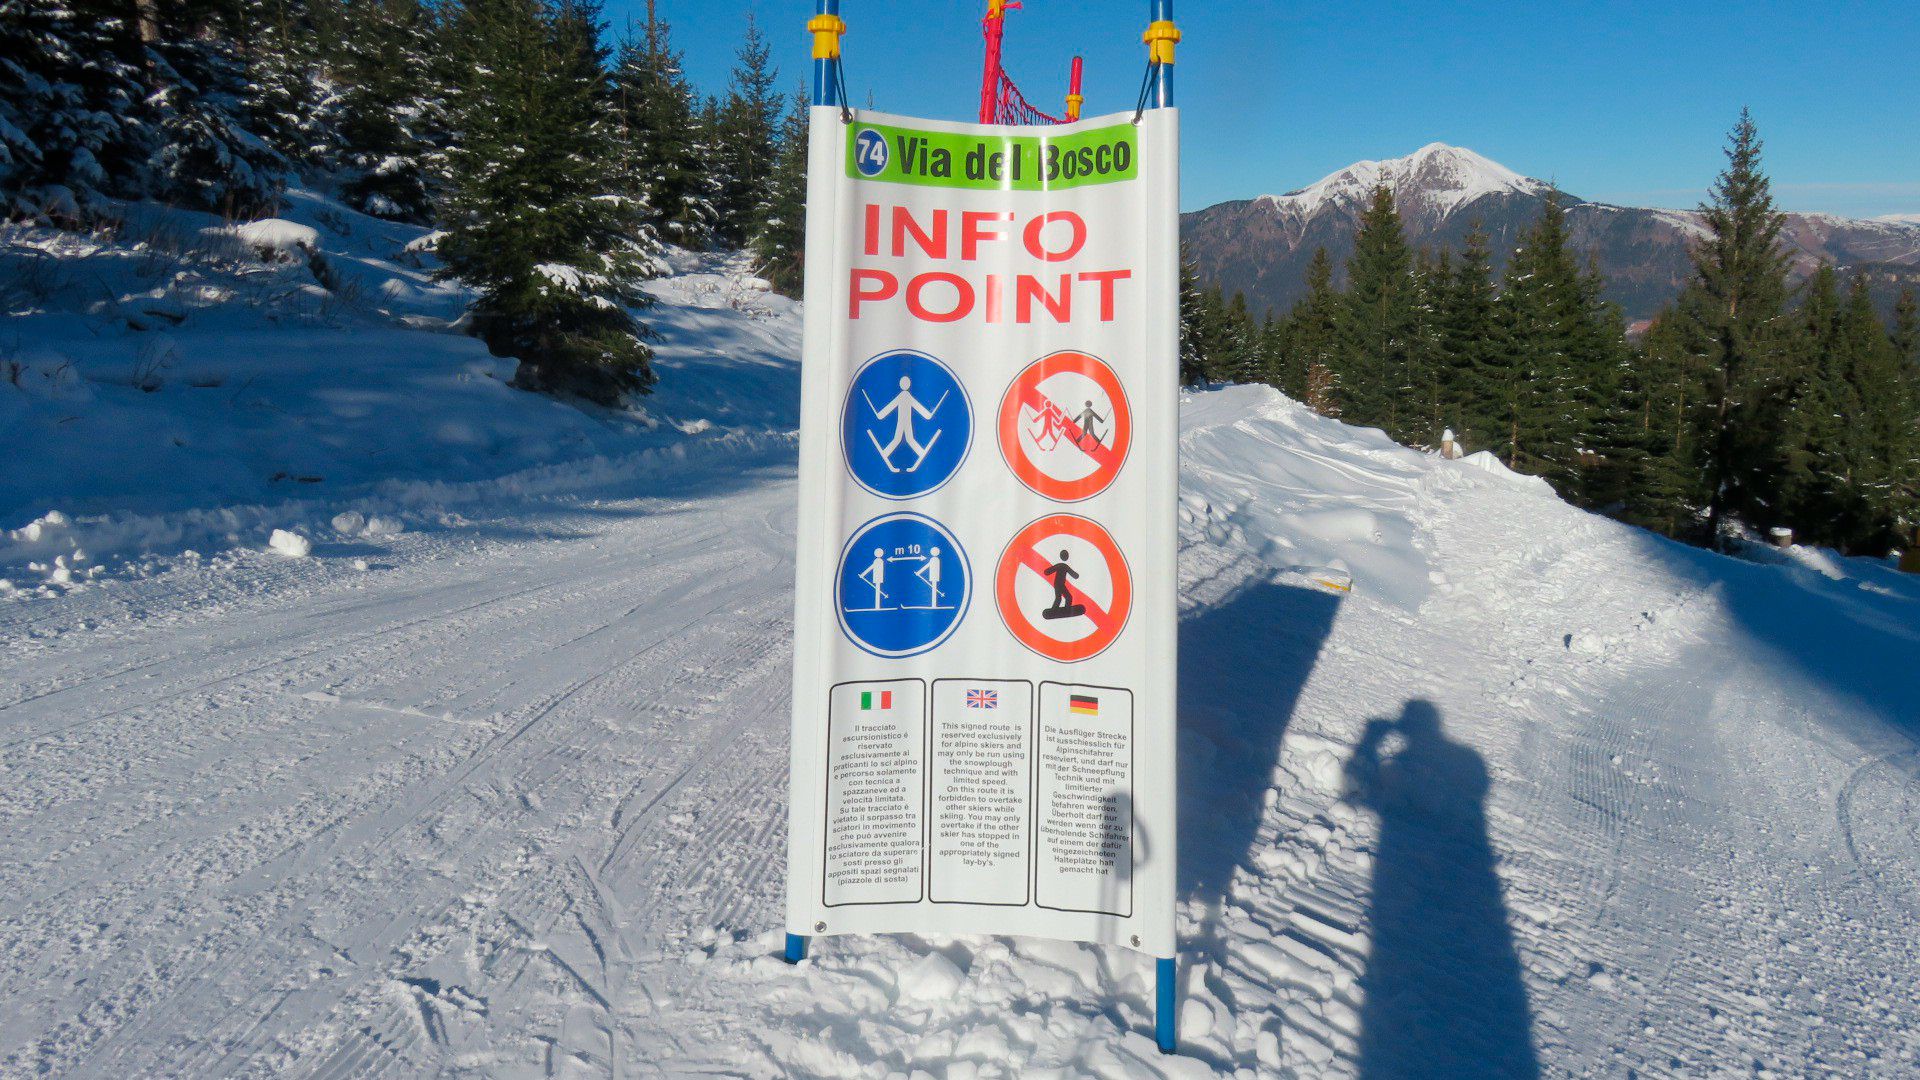 Creo que nunca había visto un “prohibido adelantar” en una pista de esquí. Ni el “prohibido snowboard” en una pista concreta..